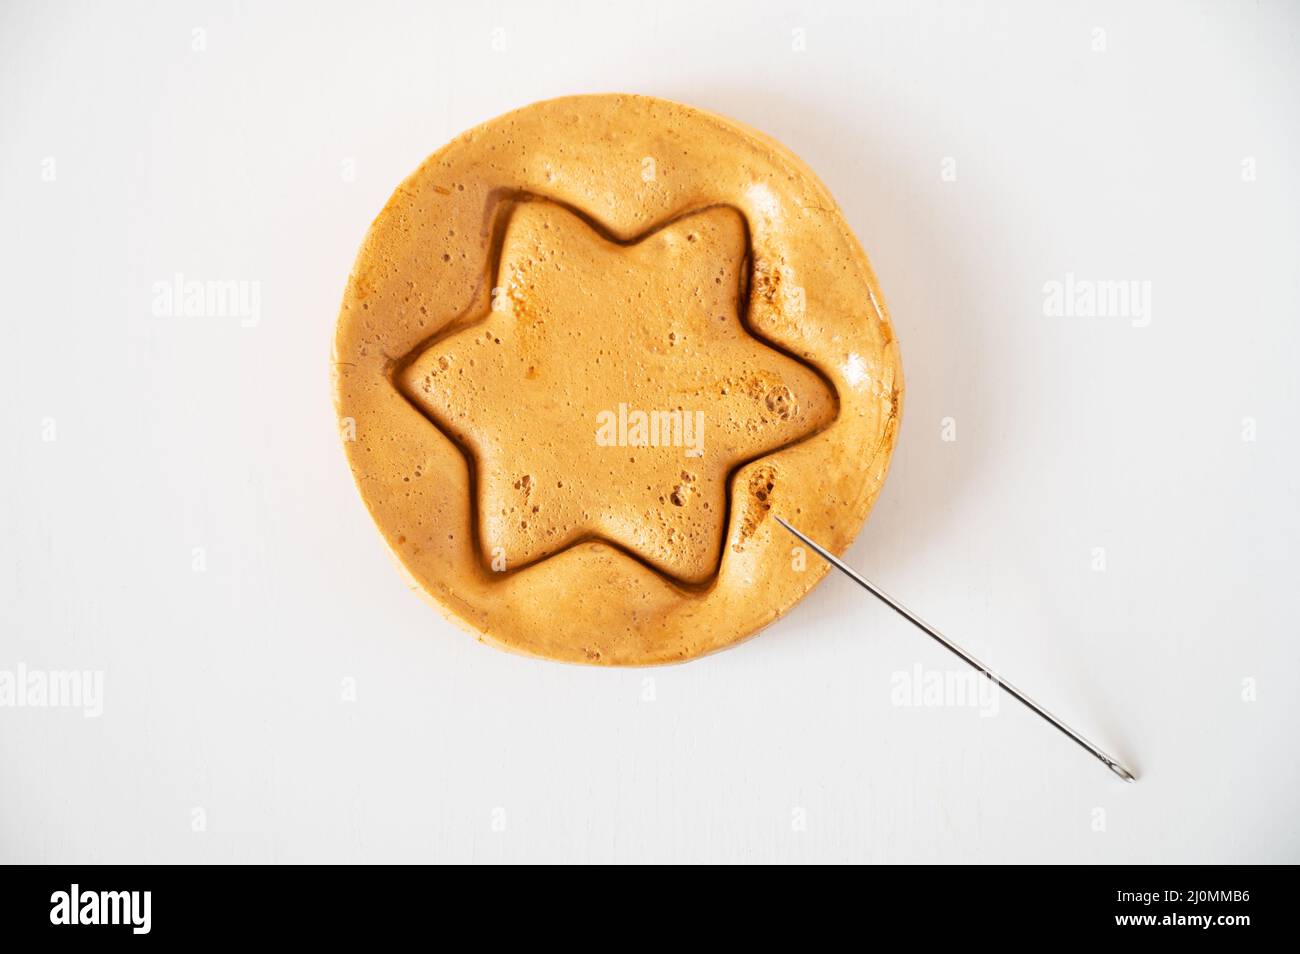 Biscuits de sucre brun caramel avec une aiguille en métal Banque D'Images